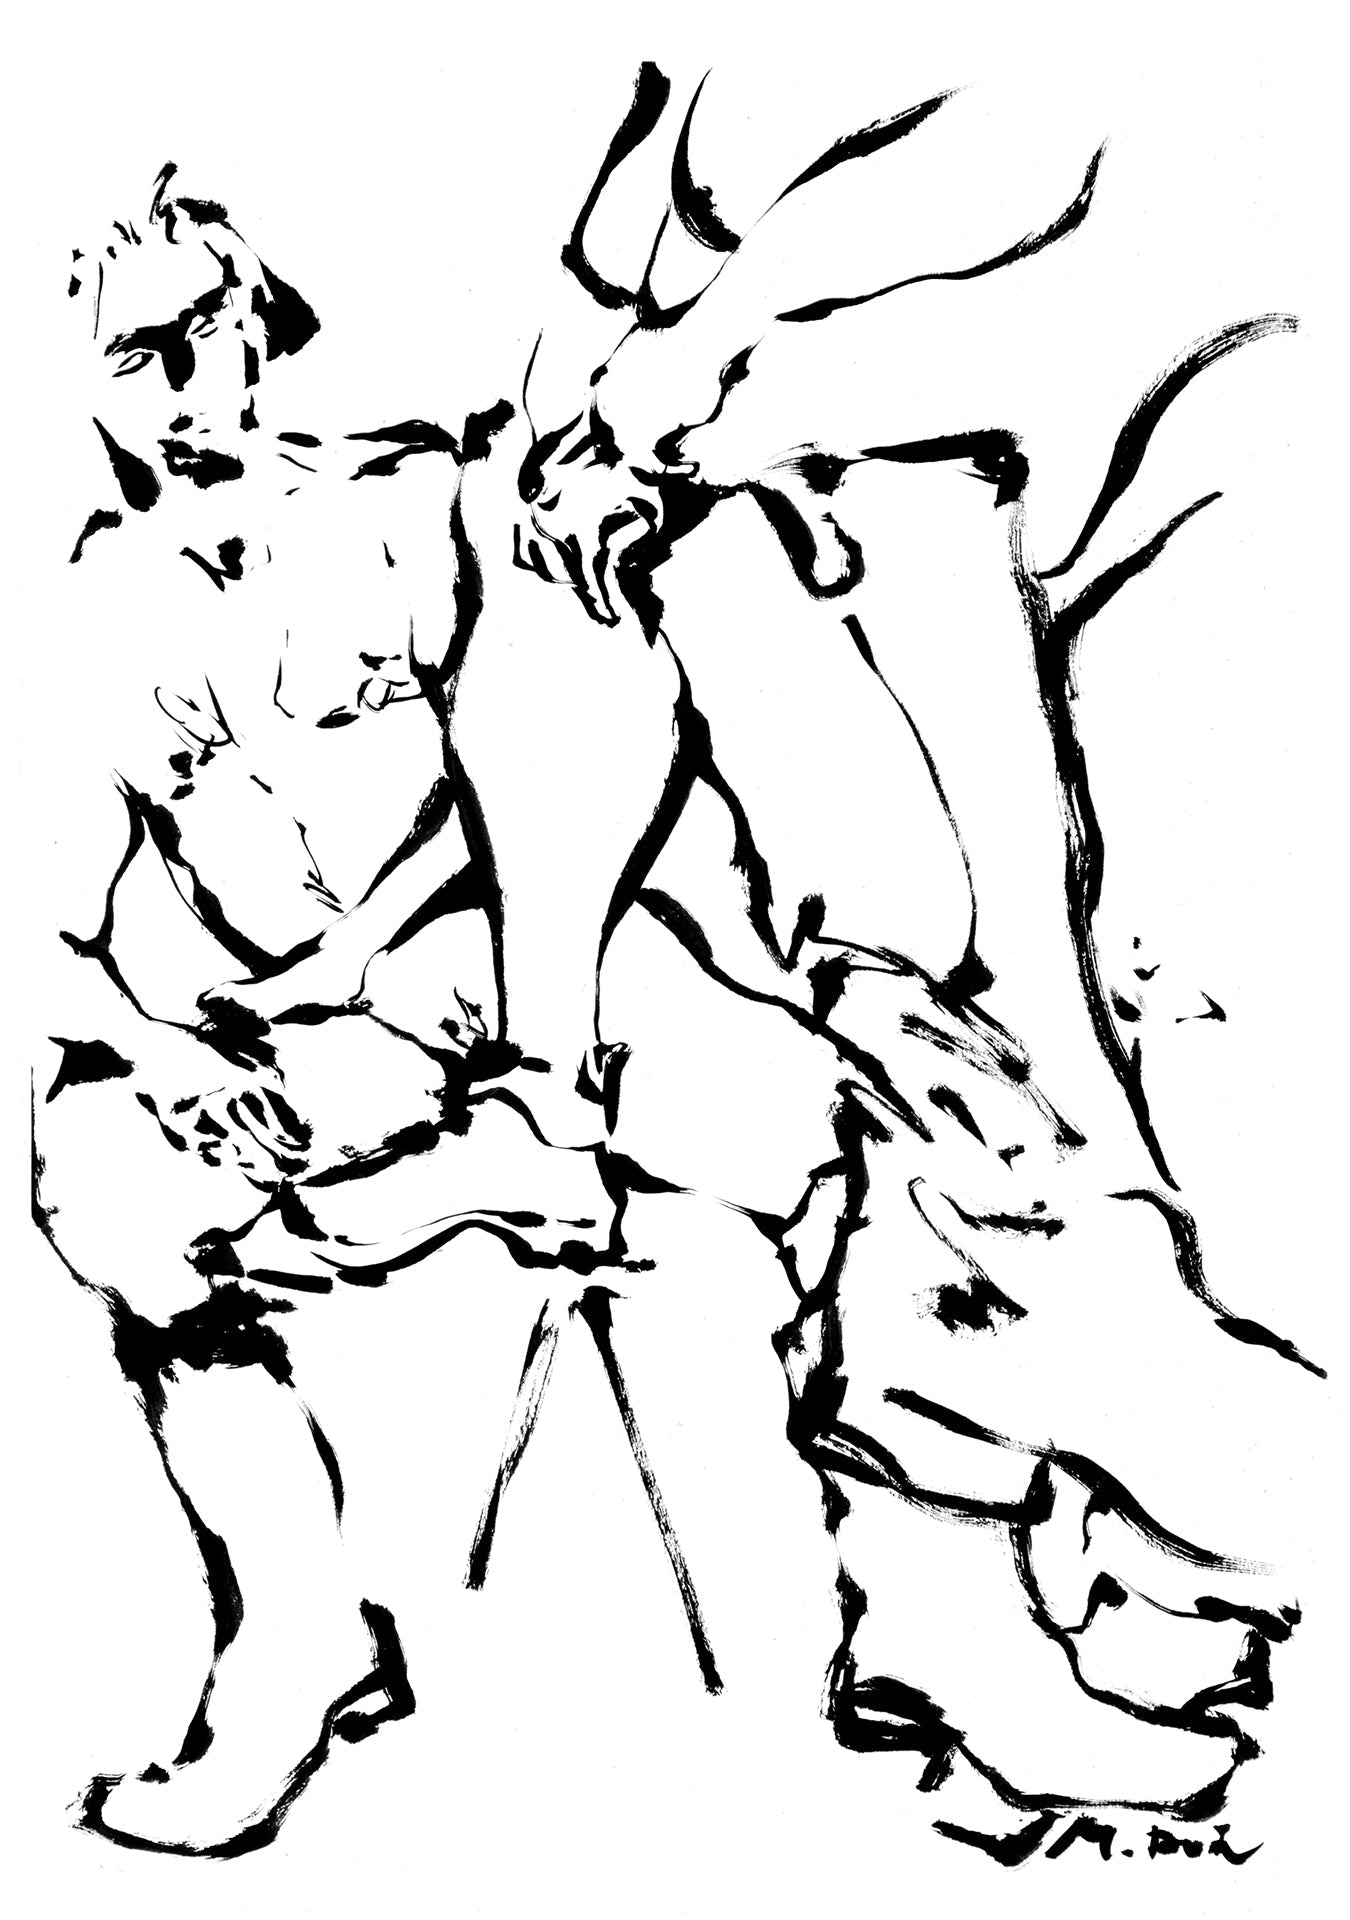 Fiorentini + Baker, Nudes In Boots, Maki-Doi, Nudes In Boots artwork 1